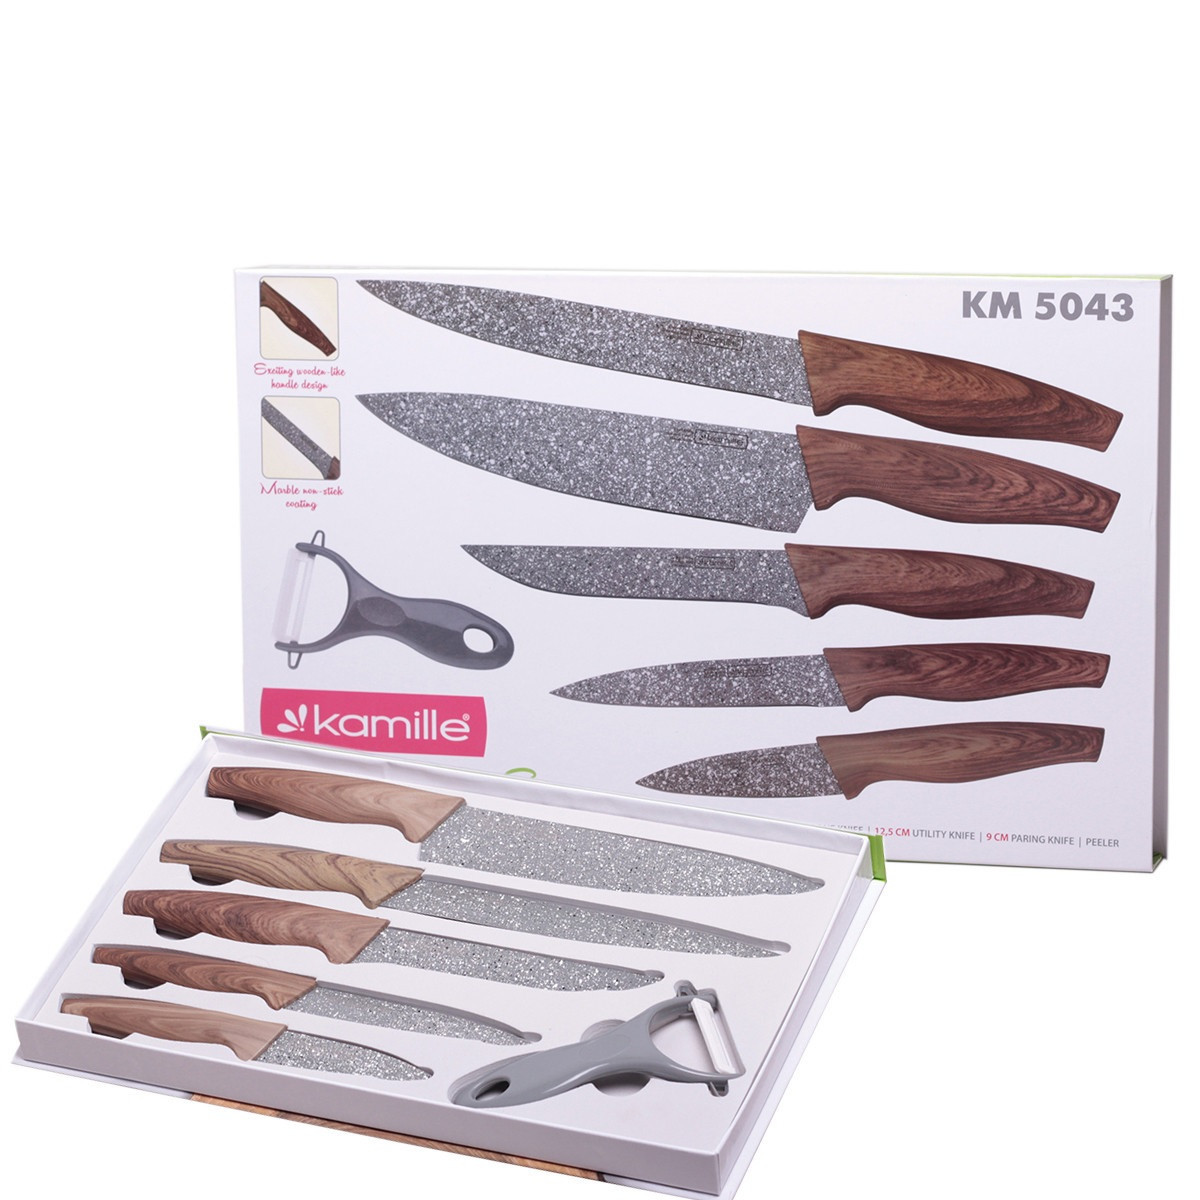 Kamille/ Секунда Набор кухонных ножей в подарочной упаковке 6 предметов (5 ножей+пиллер), фото 1